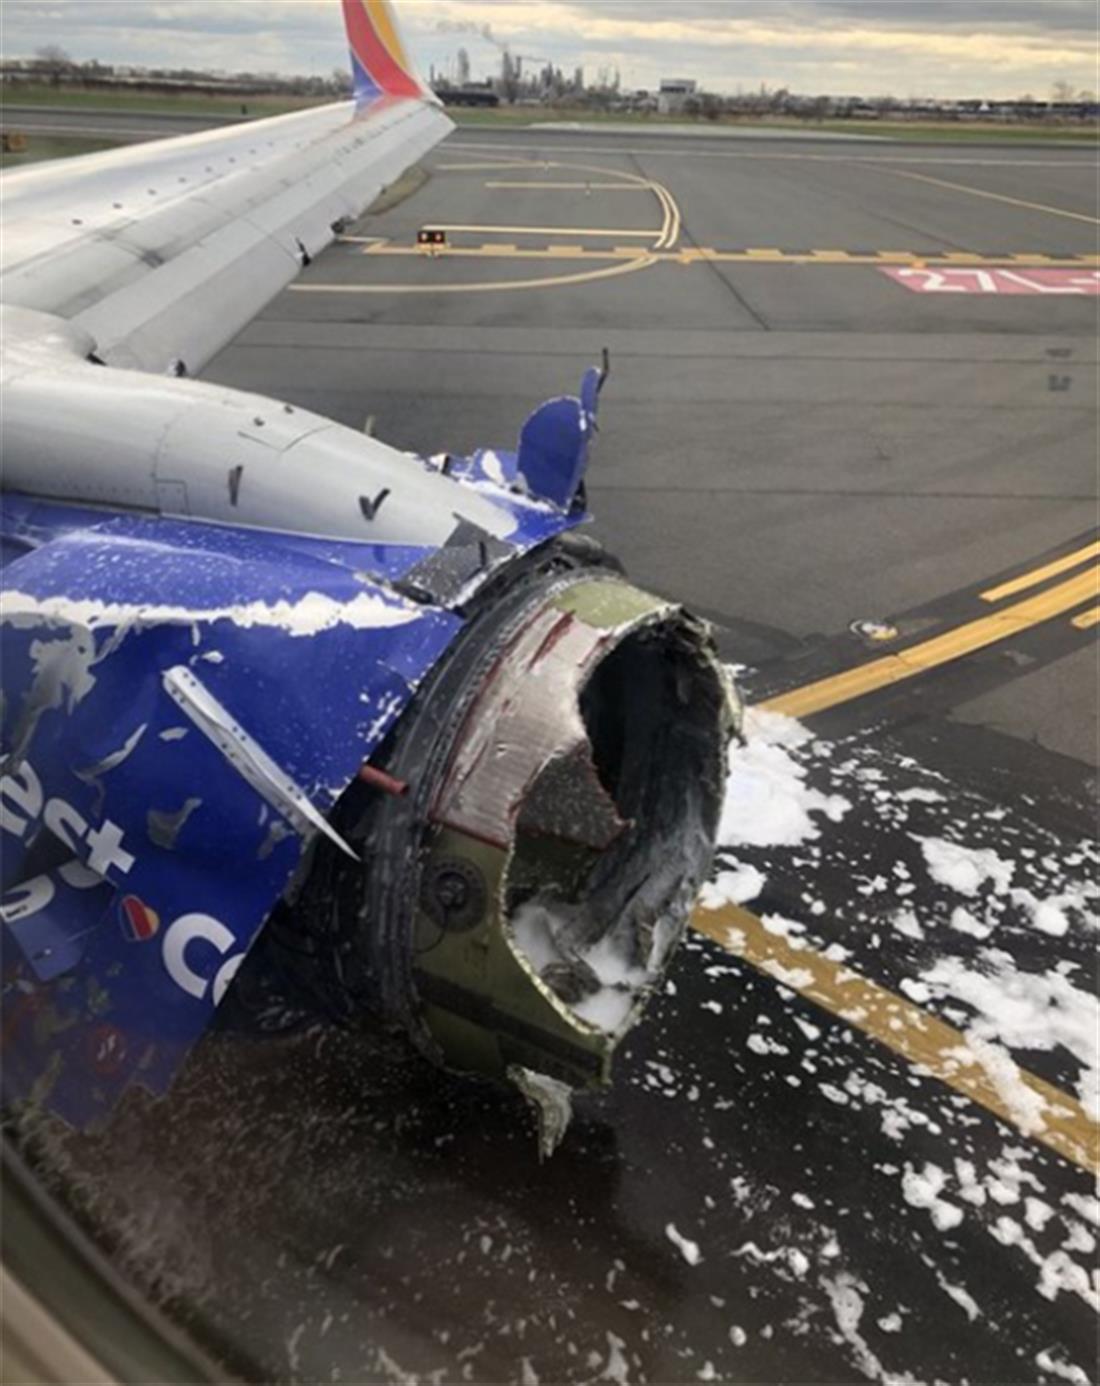 πτήση 1380 - Southwest  - έκρηξη κινητήρα - σπασμένο παράθυρο